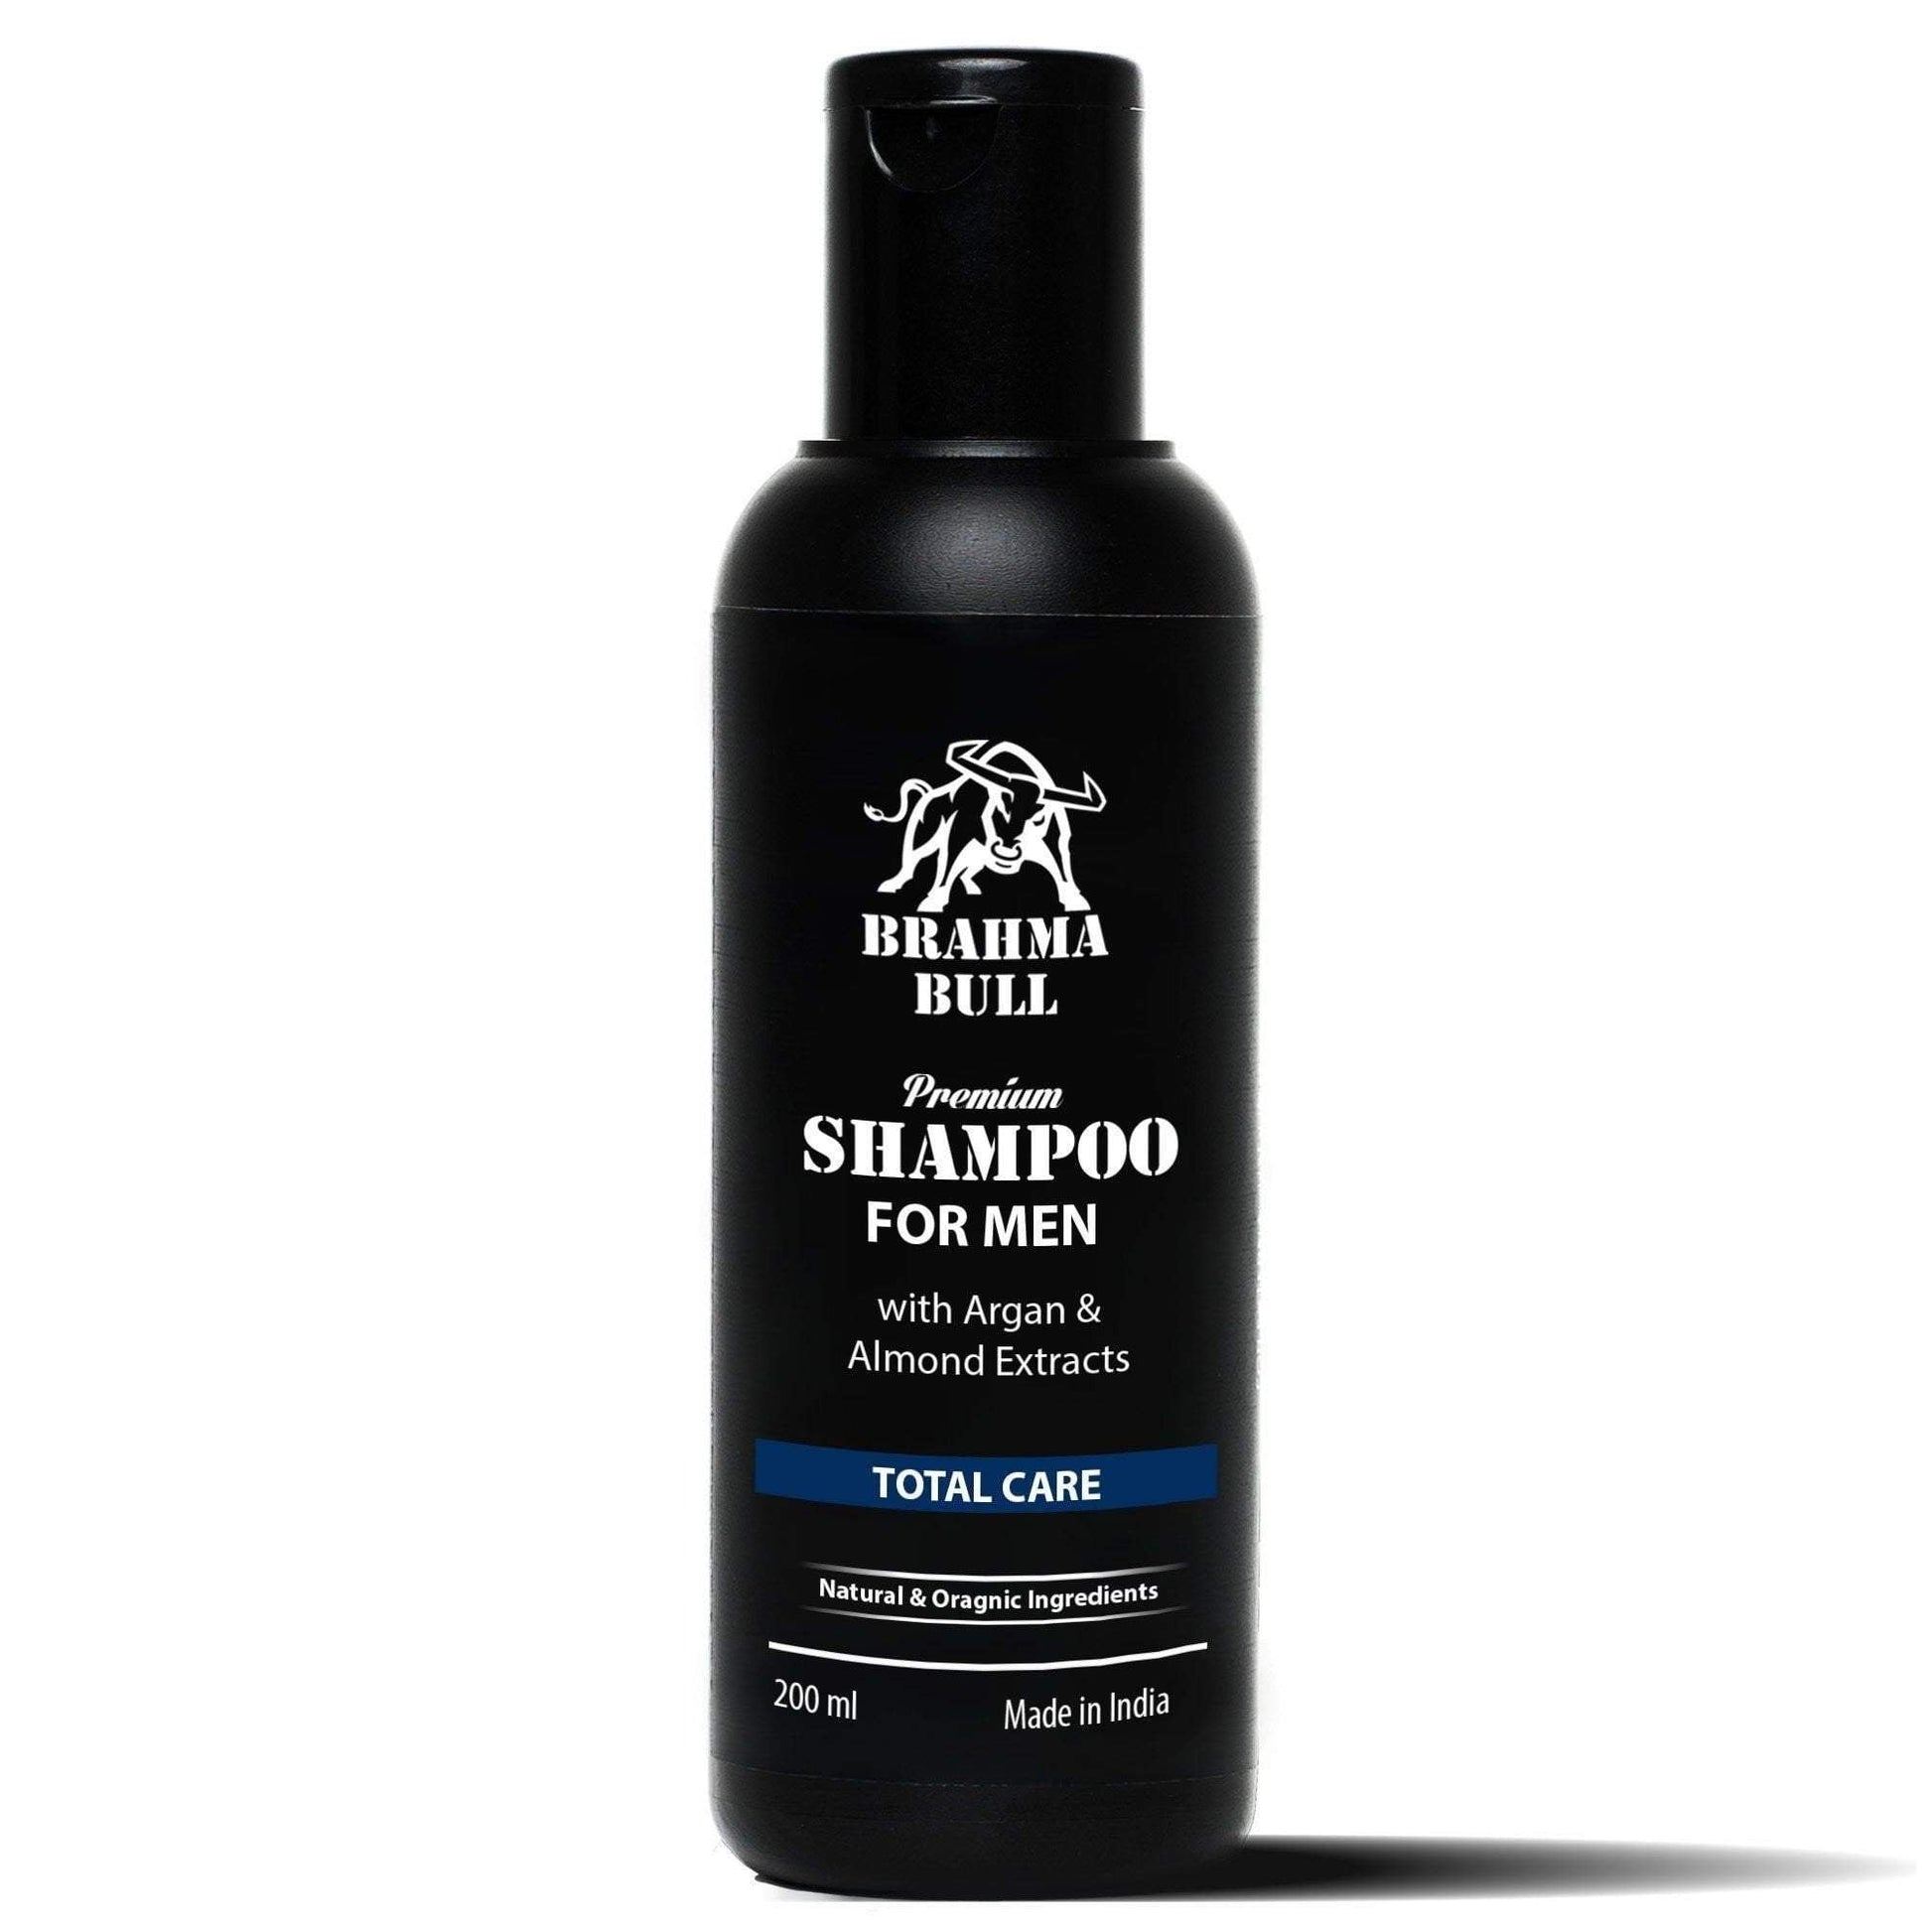 Premium Shampoo for Men - Brahma Bull - Men's Grooming